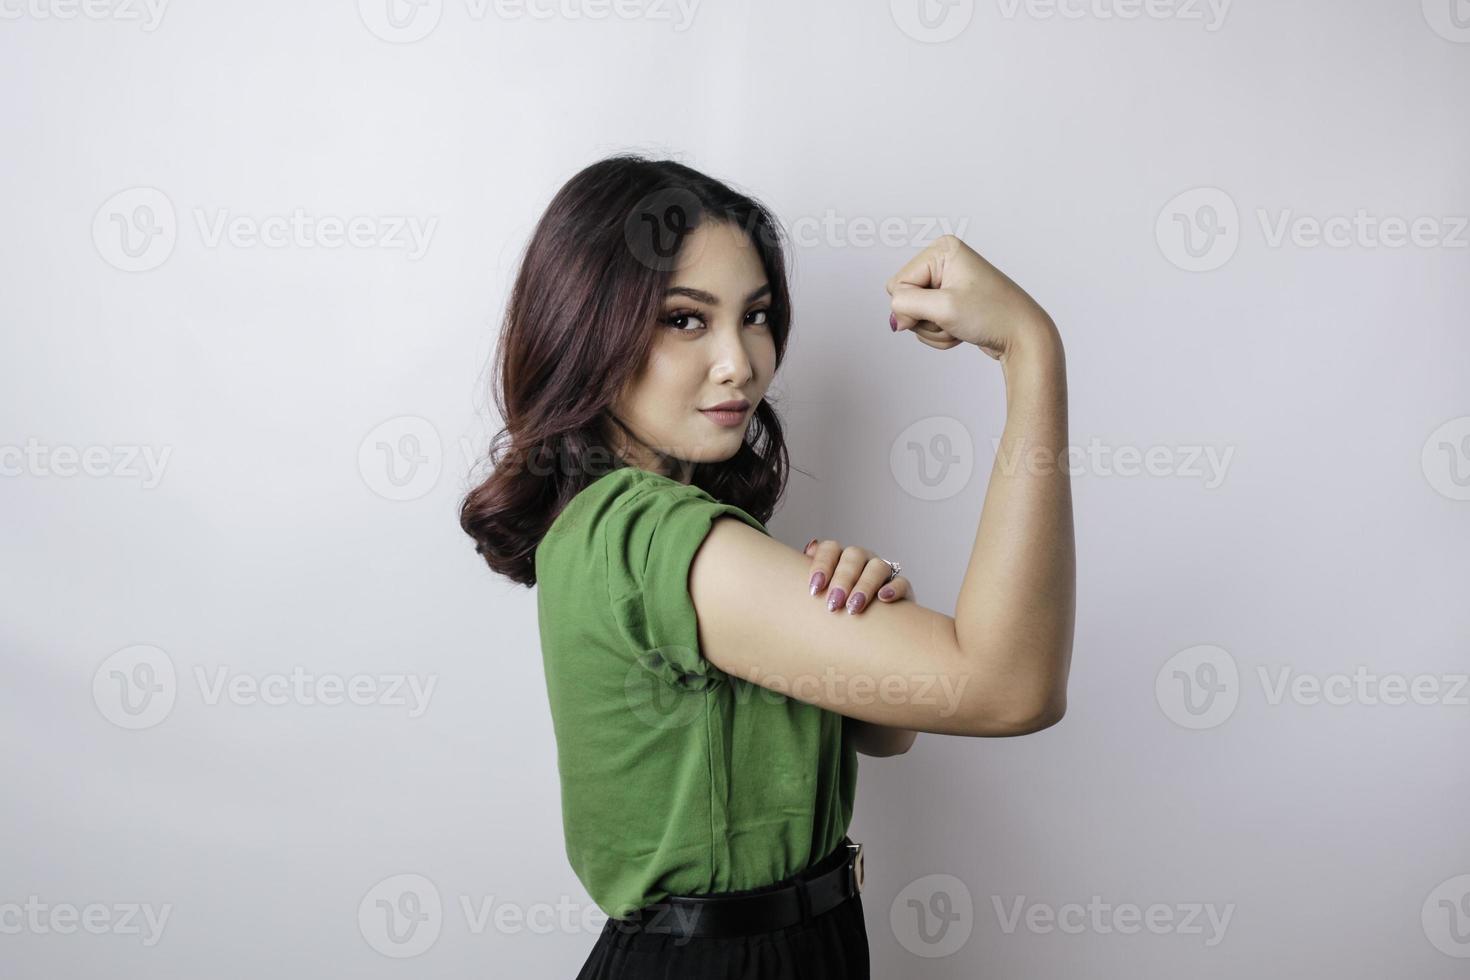 upphetsad asiatisk kvinna bär en grön t-shirt som visar stark gest förbi lyft henne vapen och muskler leende stolt foto